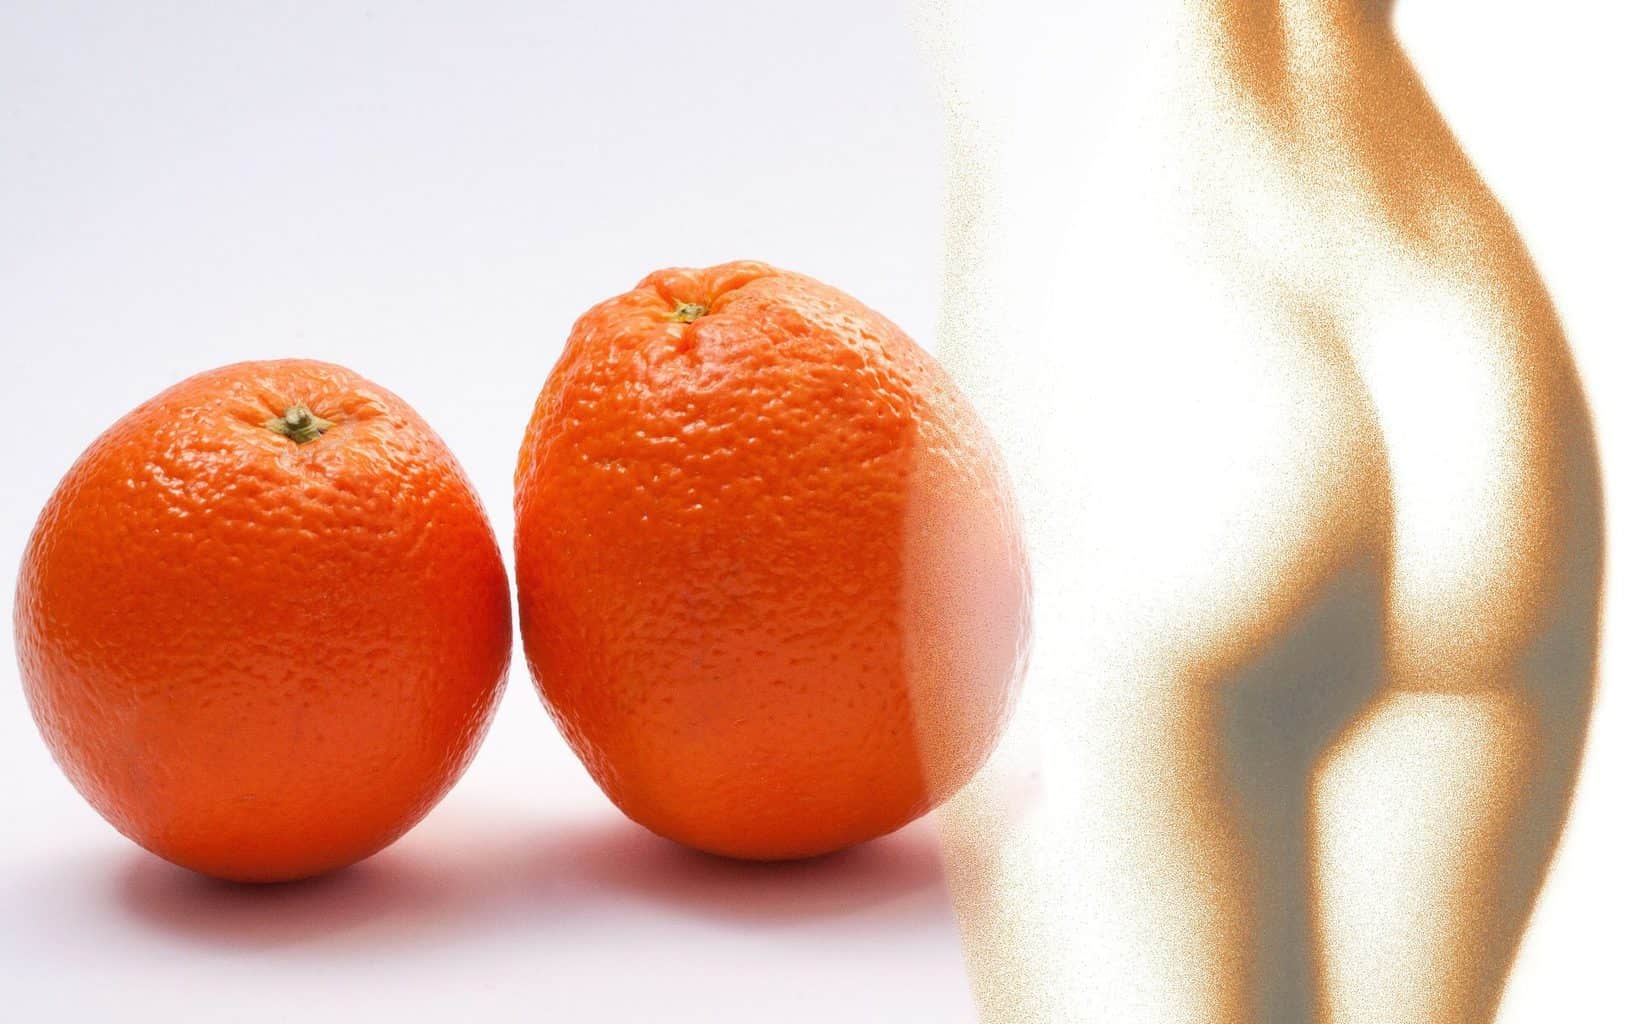 cellulite faszientraining orangenhaut